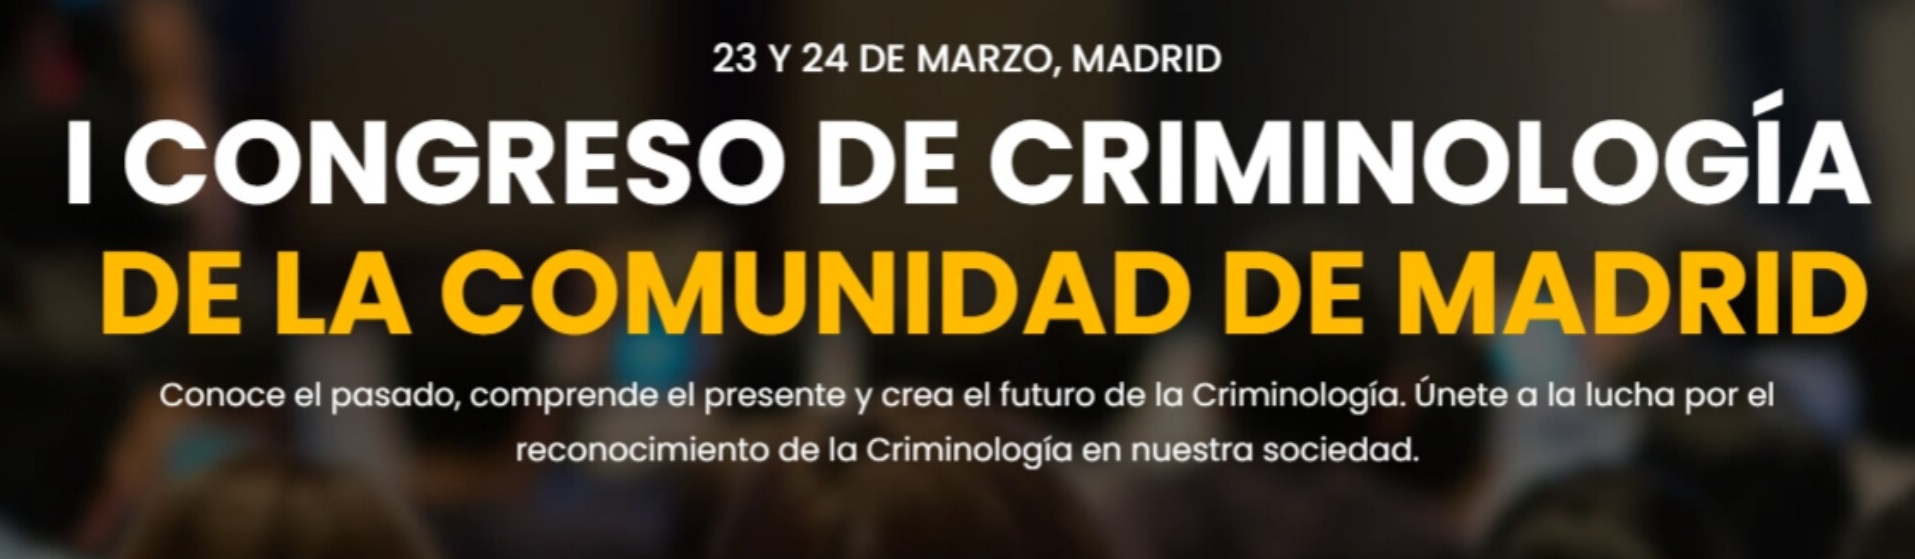 I Congreso de Criminología de la Comunidad de Madrid (23 y 24 de marzo, Auditorio Primero Edificio Biblioteca) 